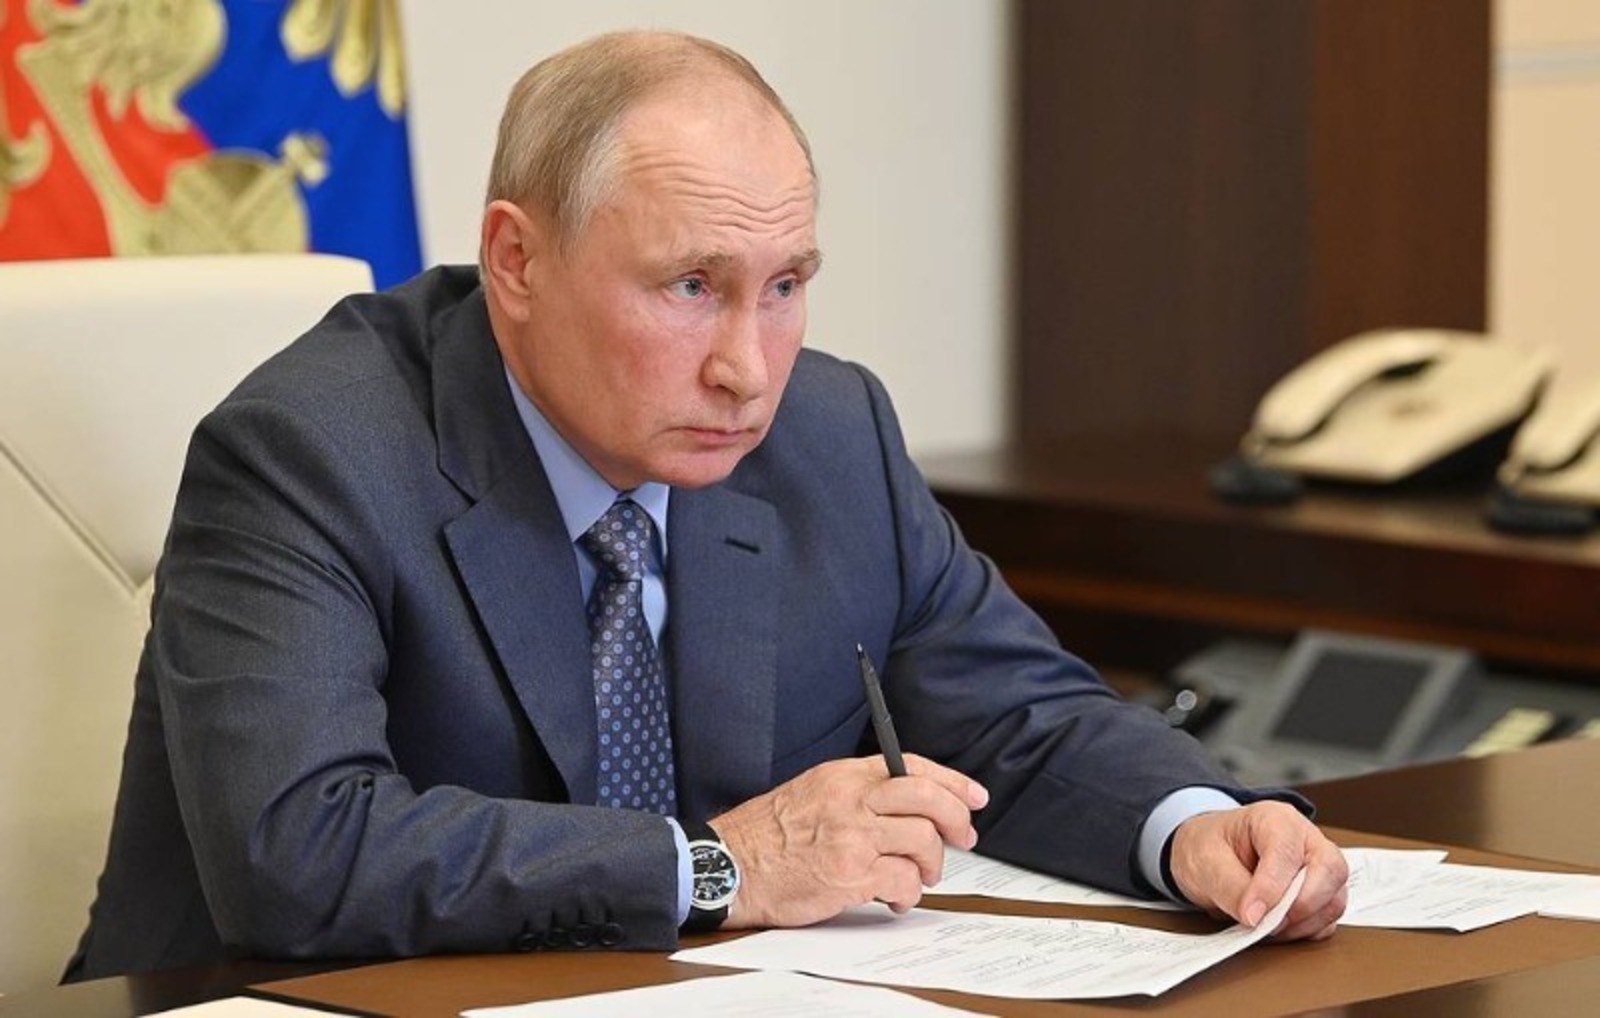 Владимир Путин высказал требование не допускать завышения цен при строительстве дорог